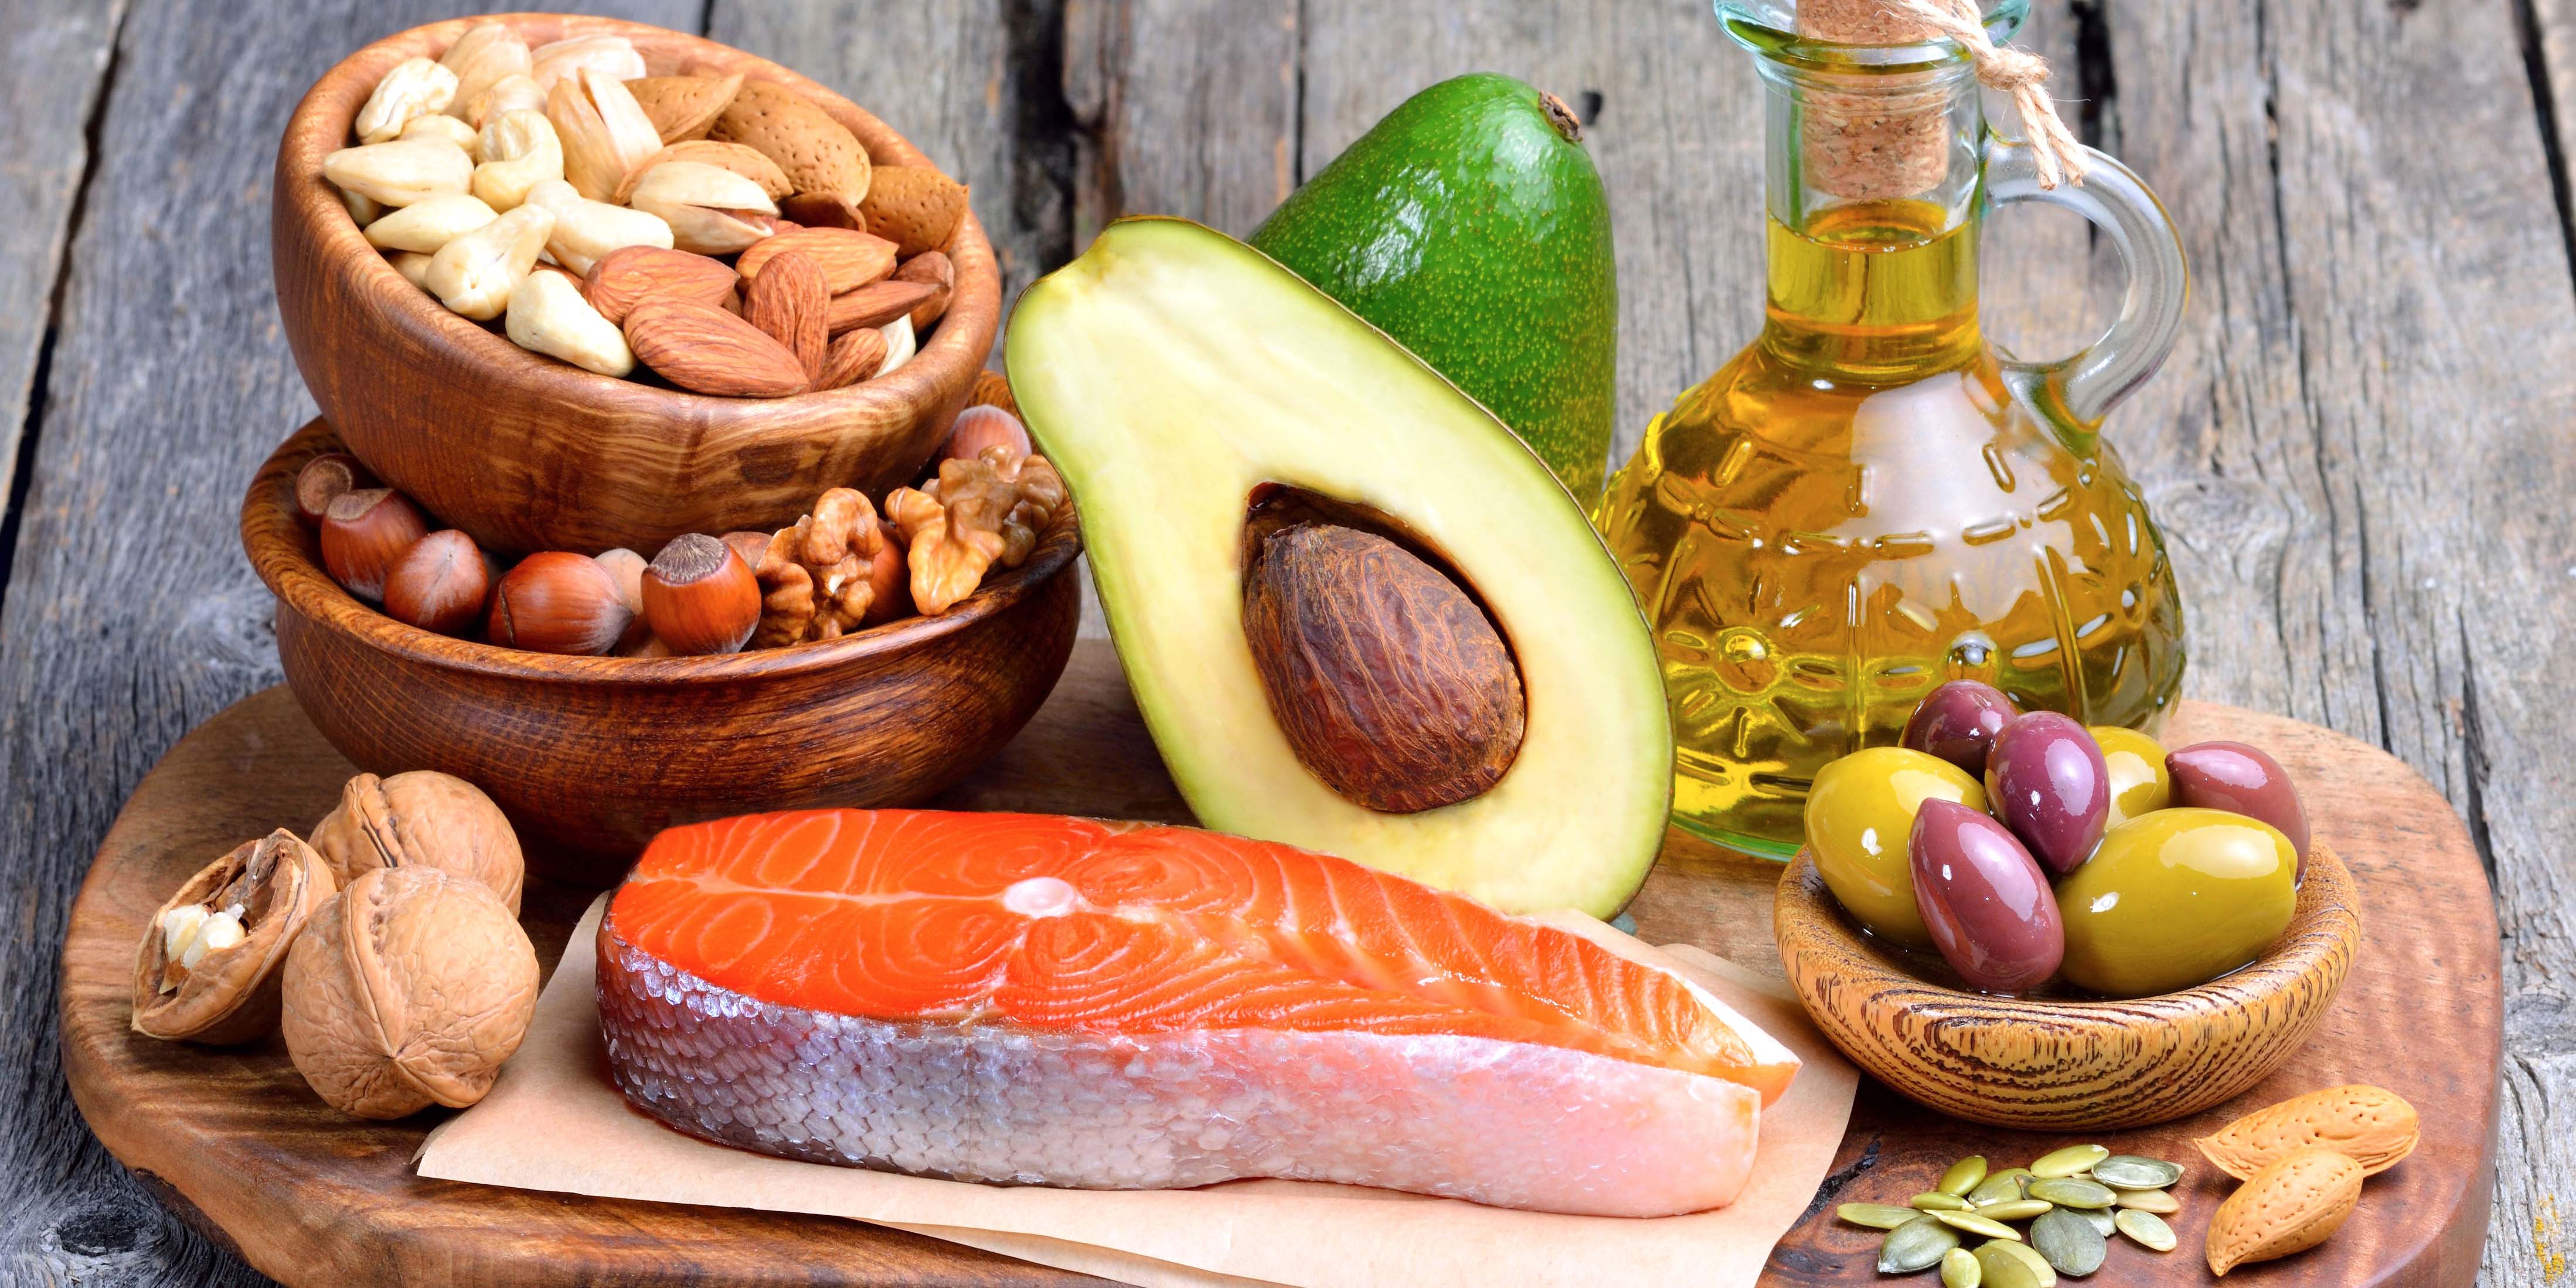 Los ácidos grasos Omega-3 presentes en varios alimentos reducen los dolores de cabeza y otros malestares. (Foto: Adobe Stock)